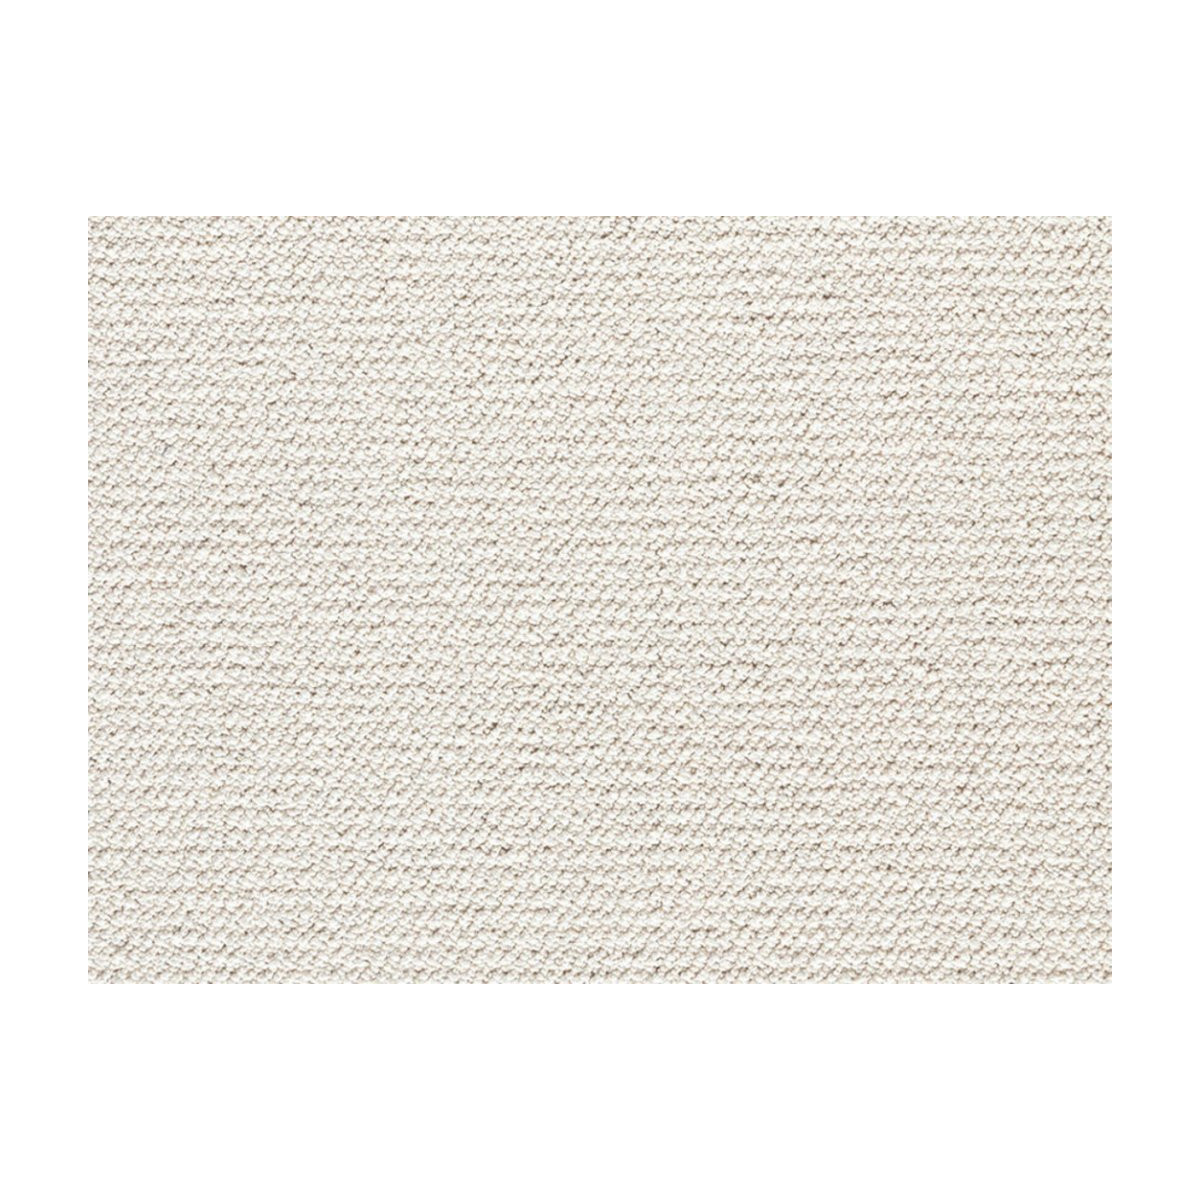 AKCE: 400x520 cm Metrážový koberec Corvino 31 bílý